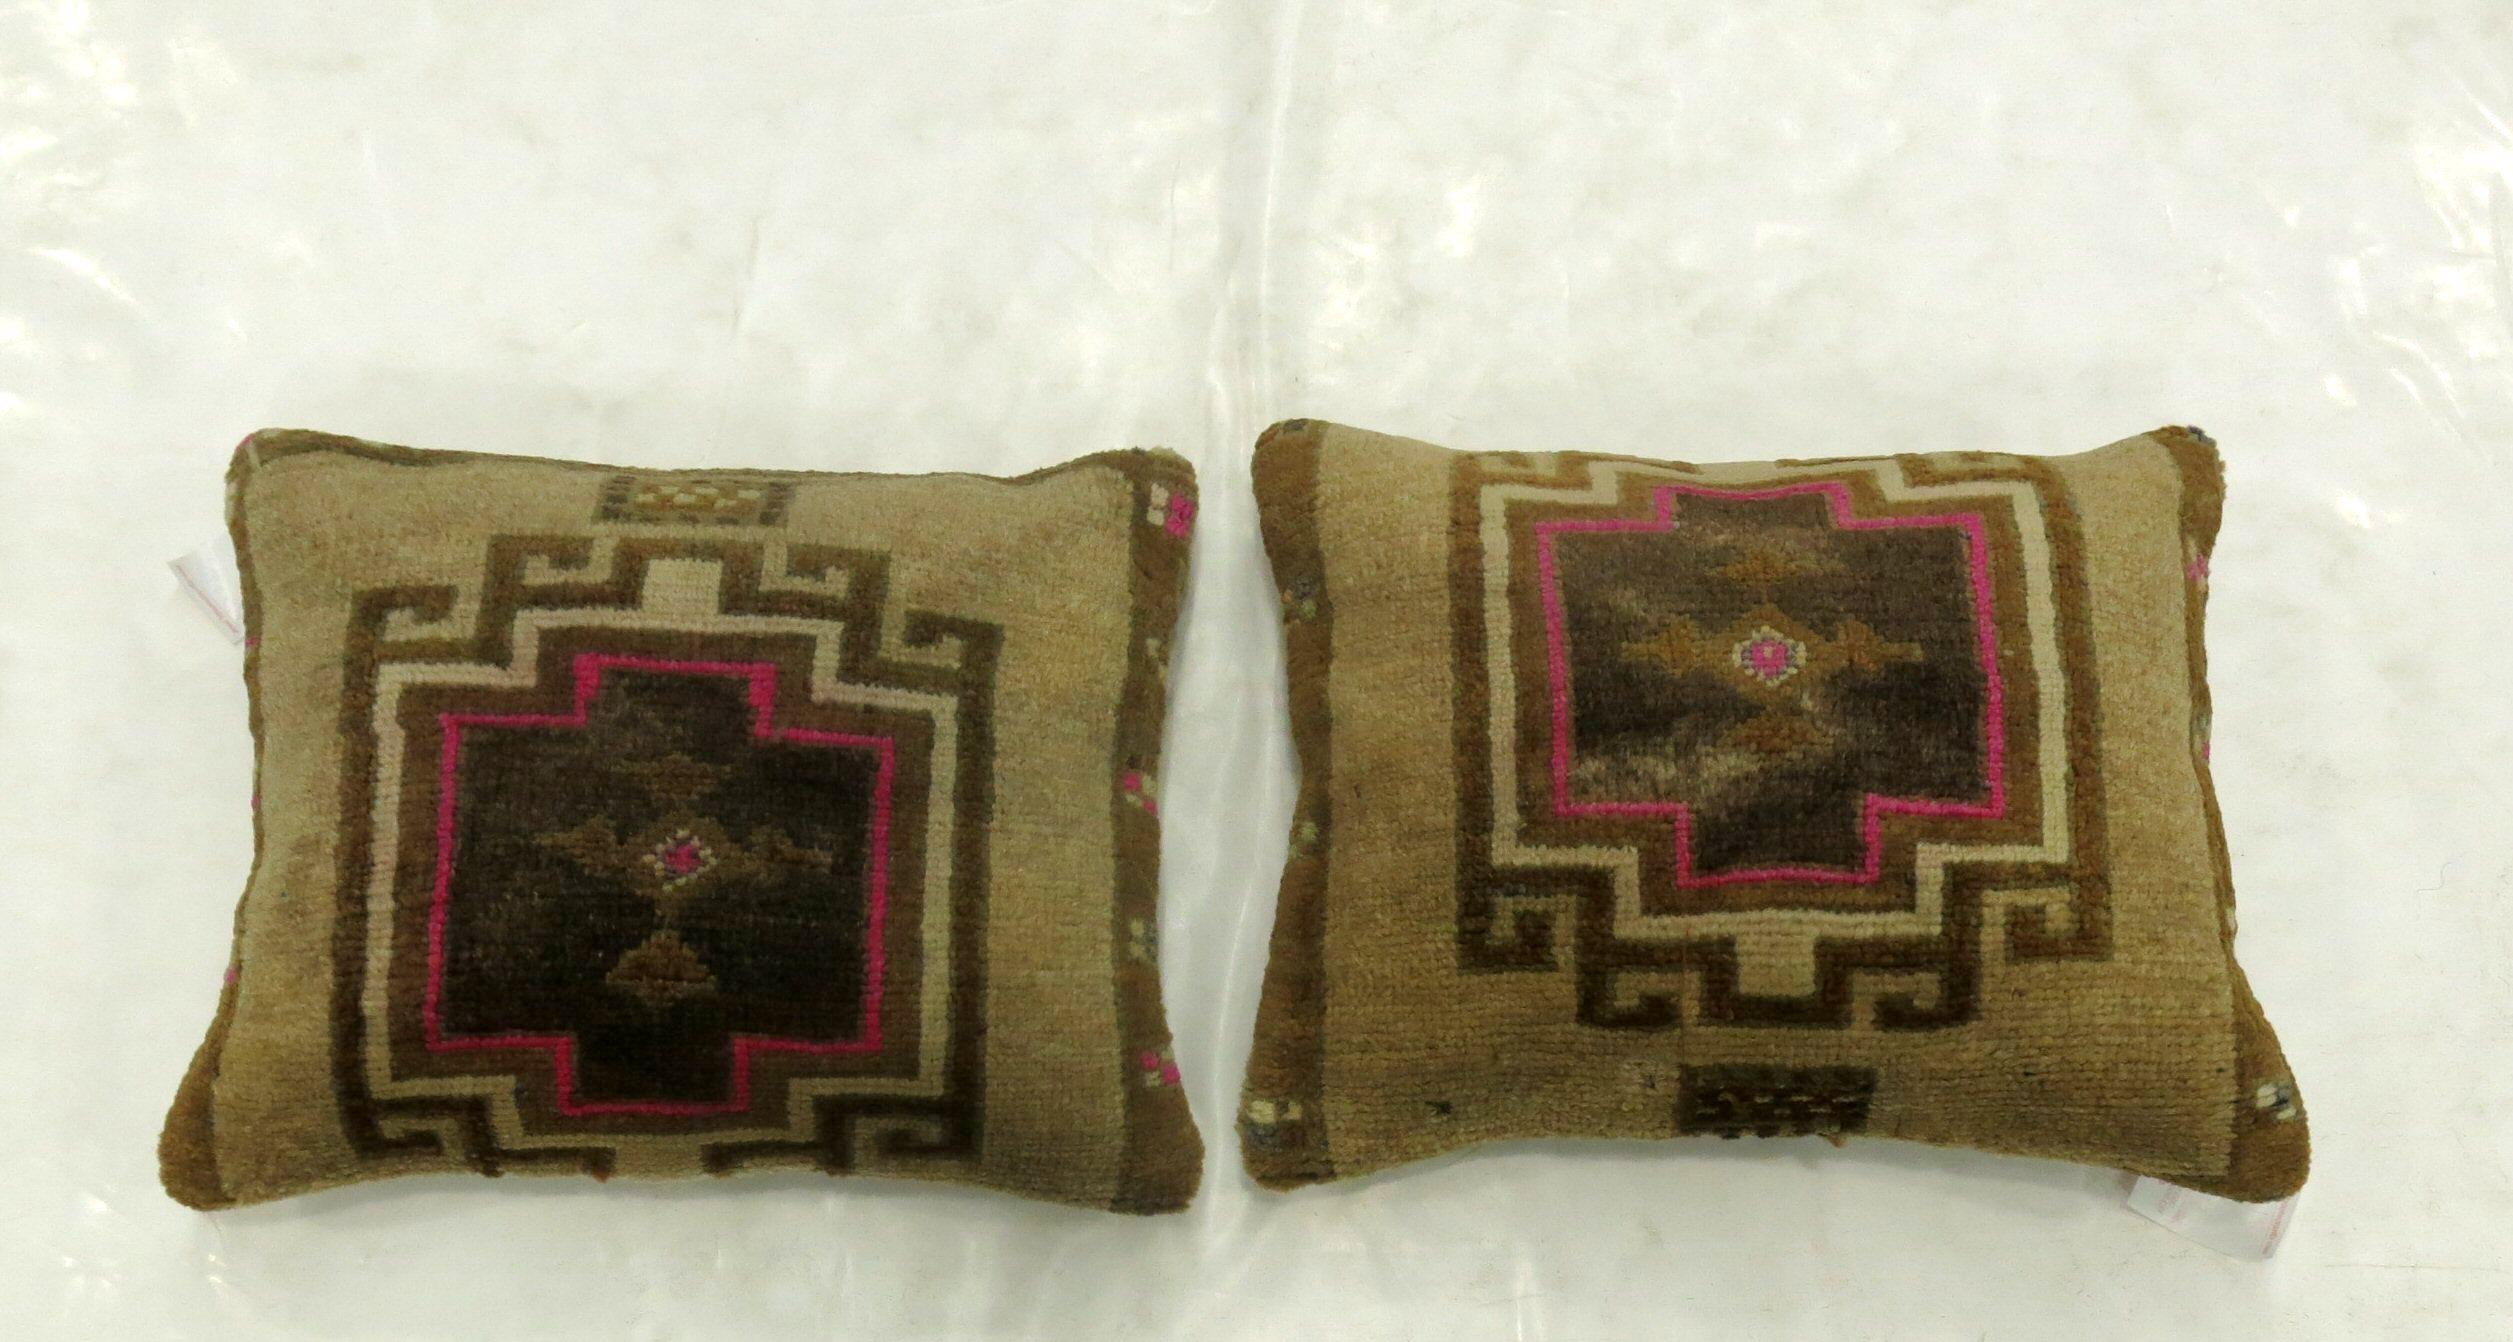 Deux coussins fabriqués à partir d'un tapis turc avec des touches de rose. Mesurant respectivement 16